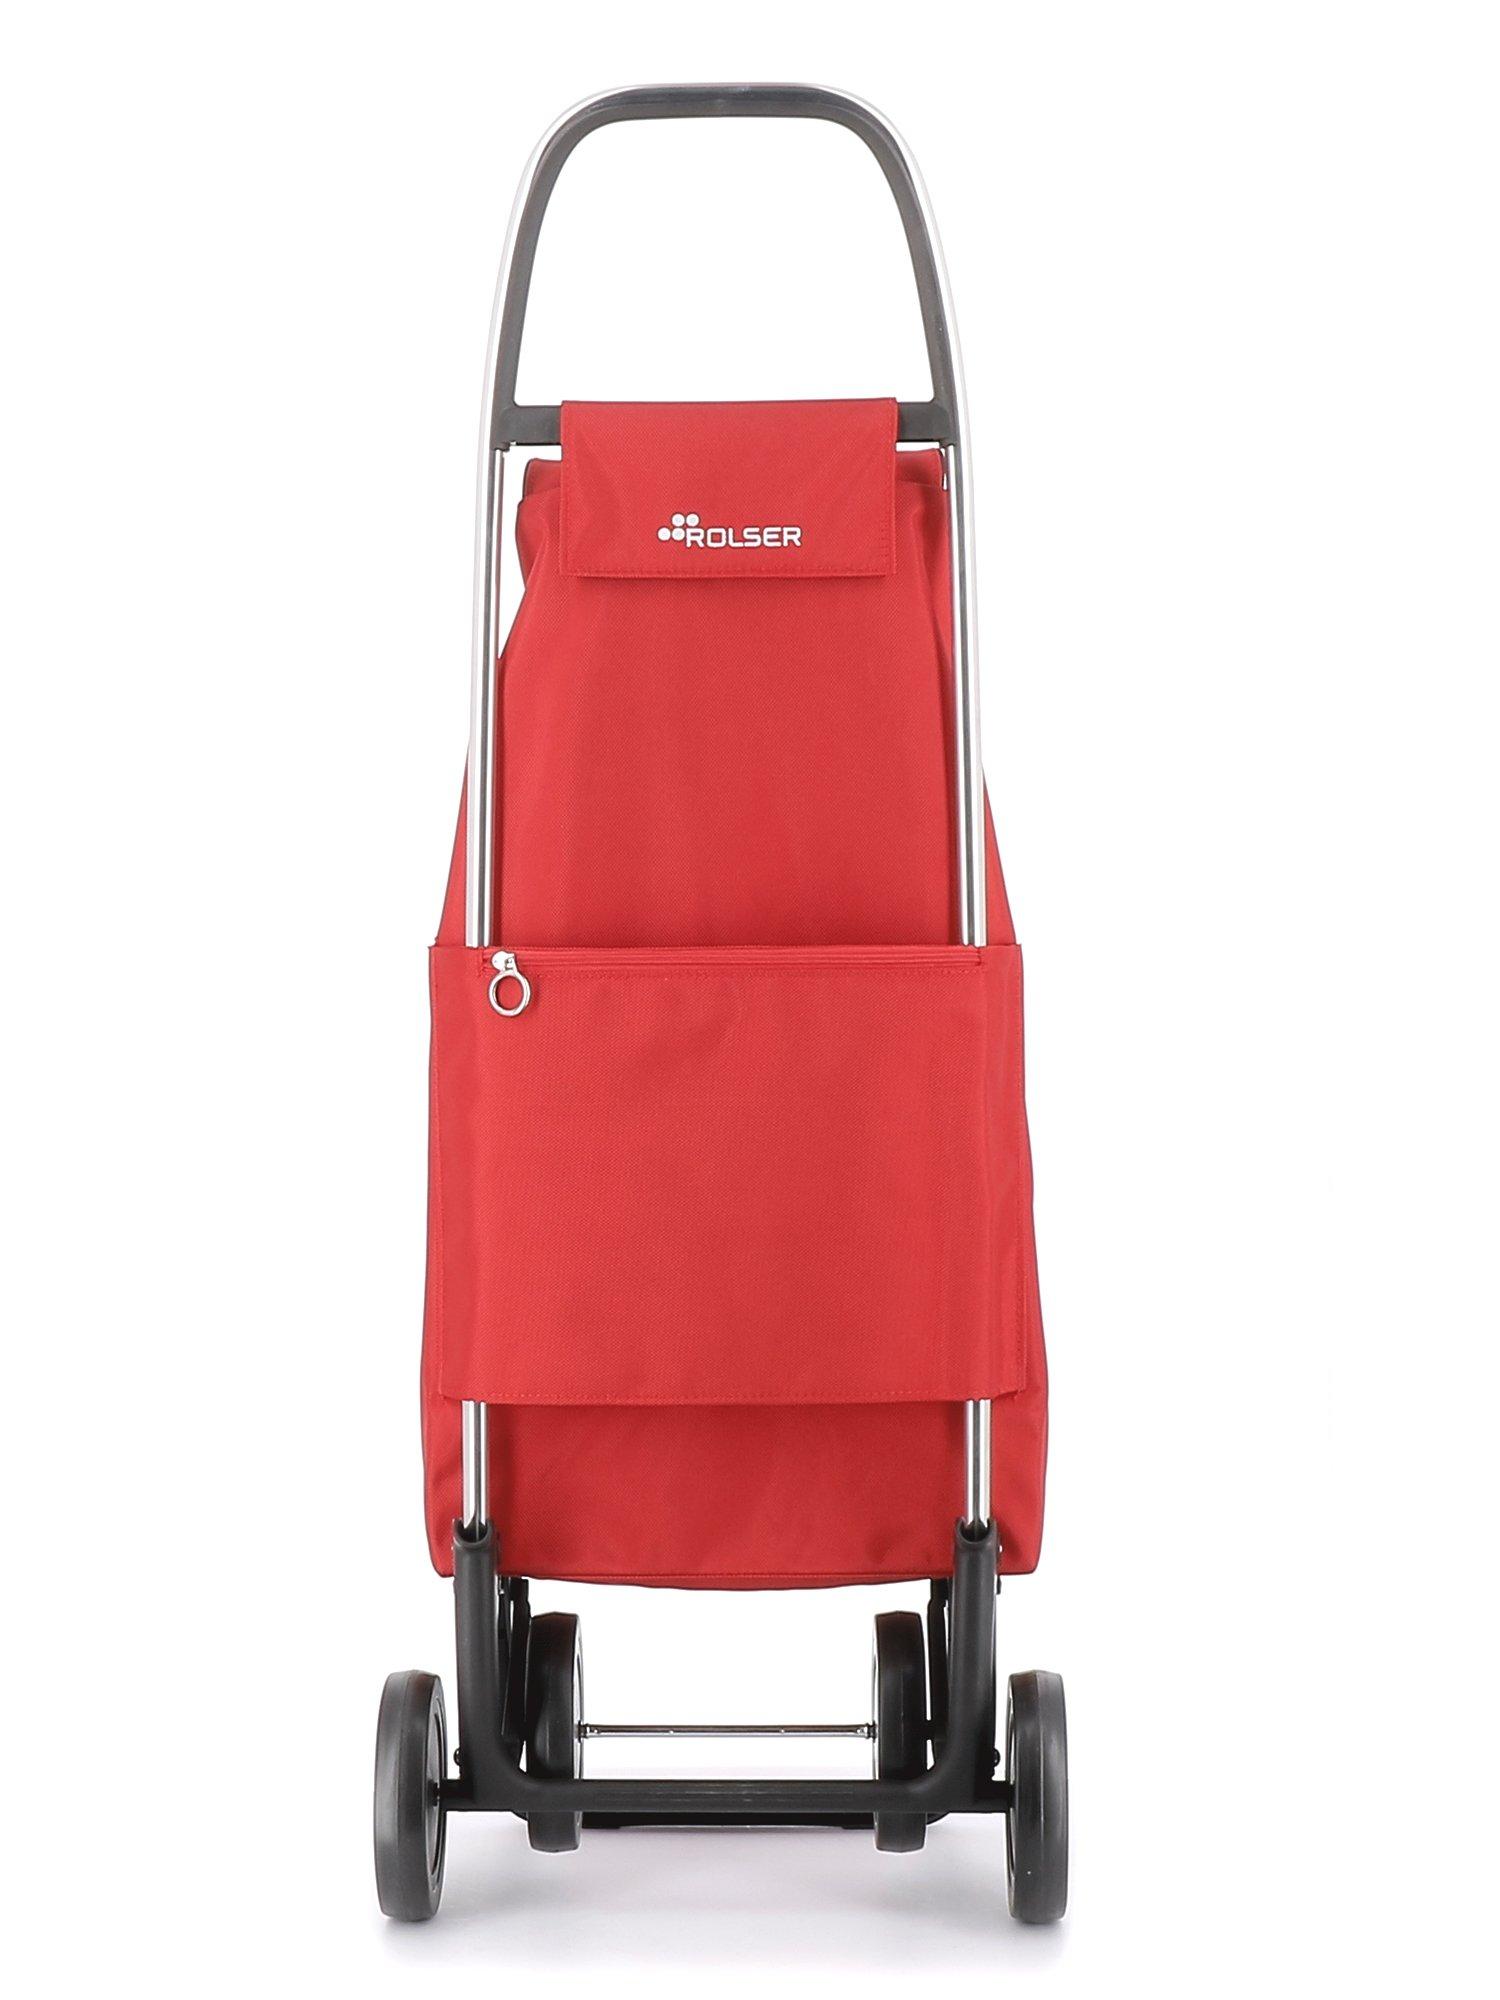 ROLSER Chariot de marché IMAX MF 4 rouge (IMX302-R)  